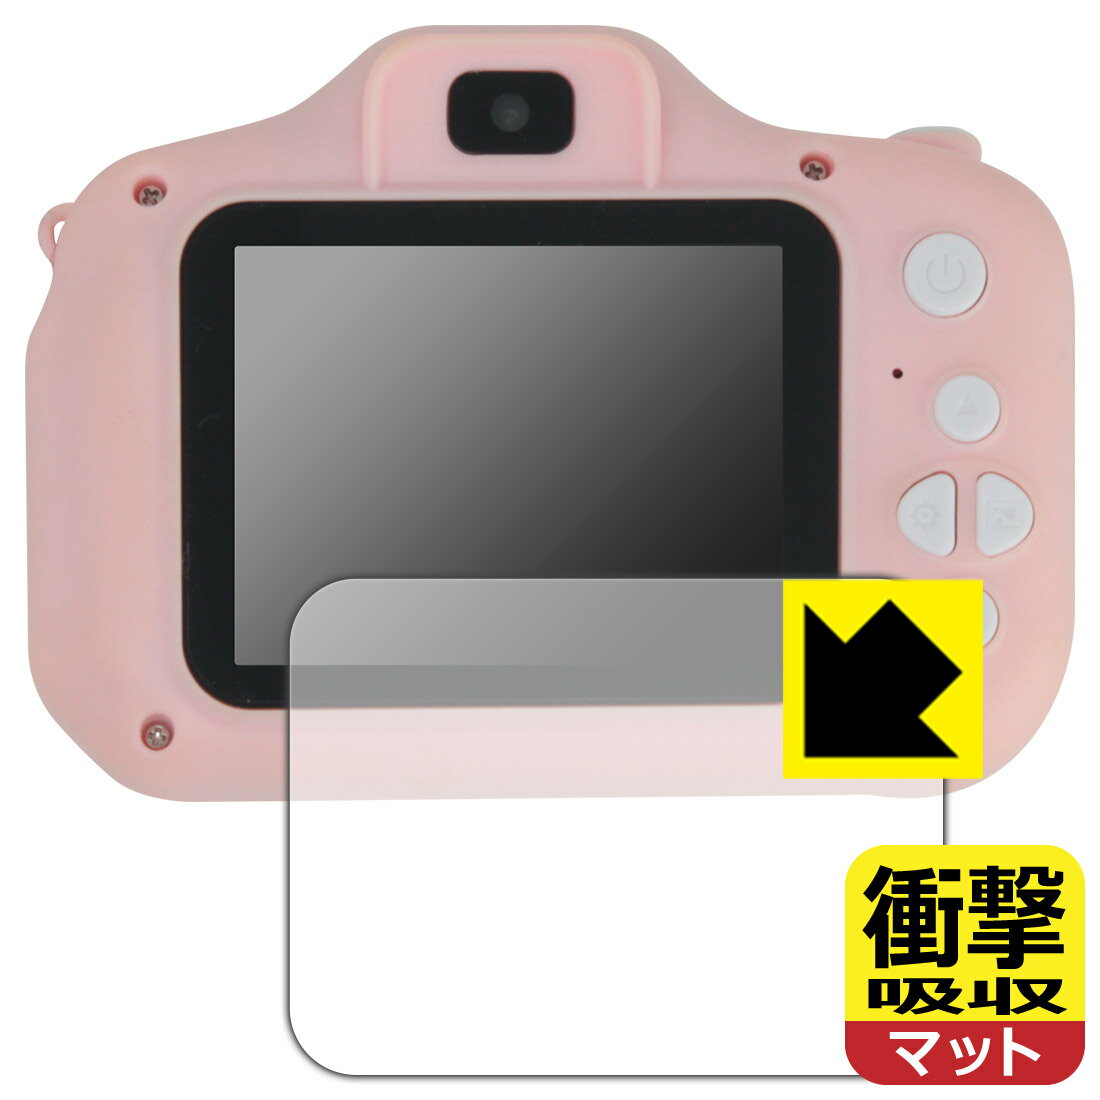 衝撃吸収【反射低減】保護フィルム Manwe 2.4インチ キッズカメラ (フィルムサイズ 58mm×44mm) 日本製 自社製造直販